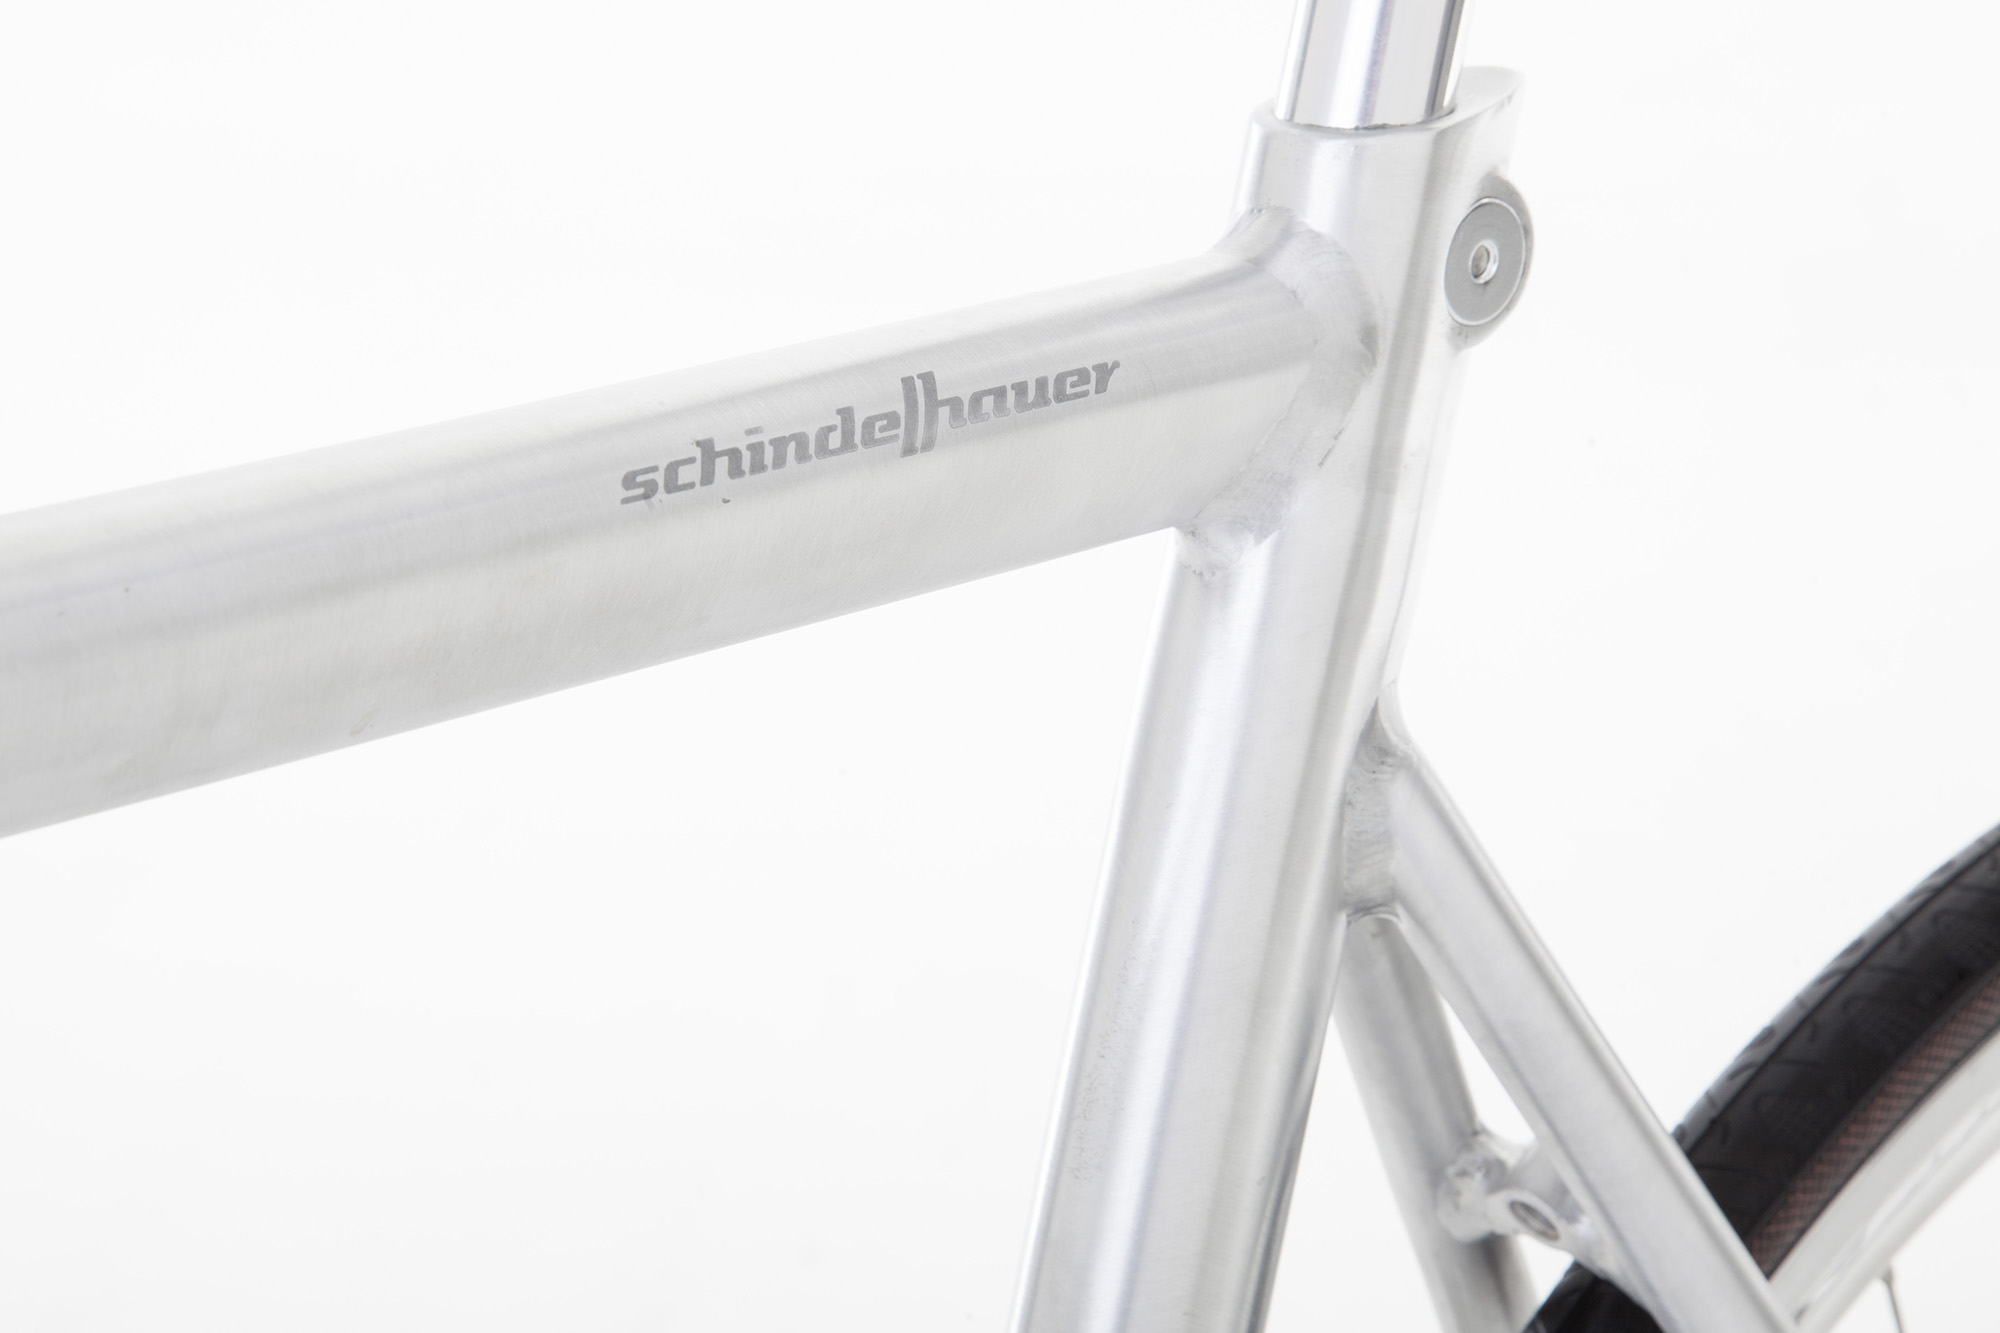 Le vélo urbain à courroie Schindelhauer Ludwig 14